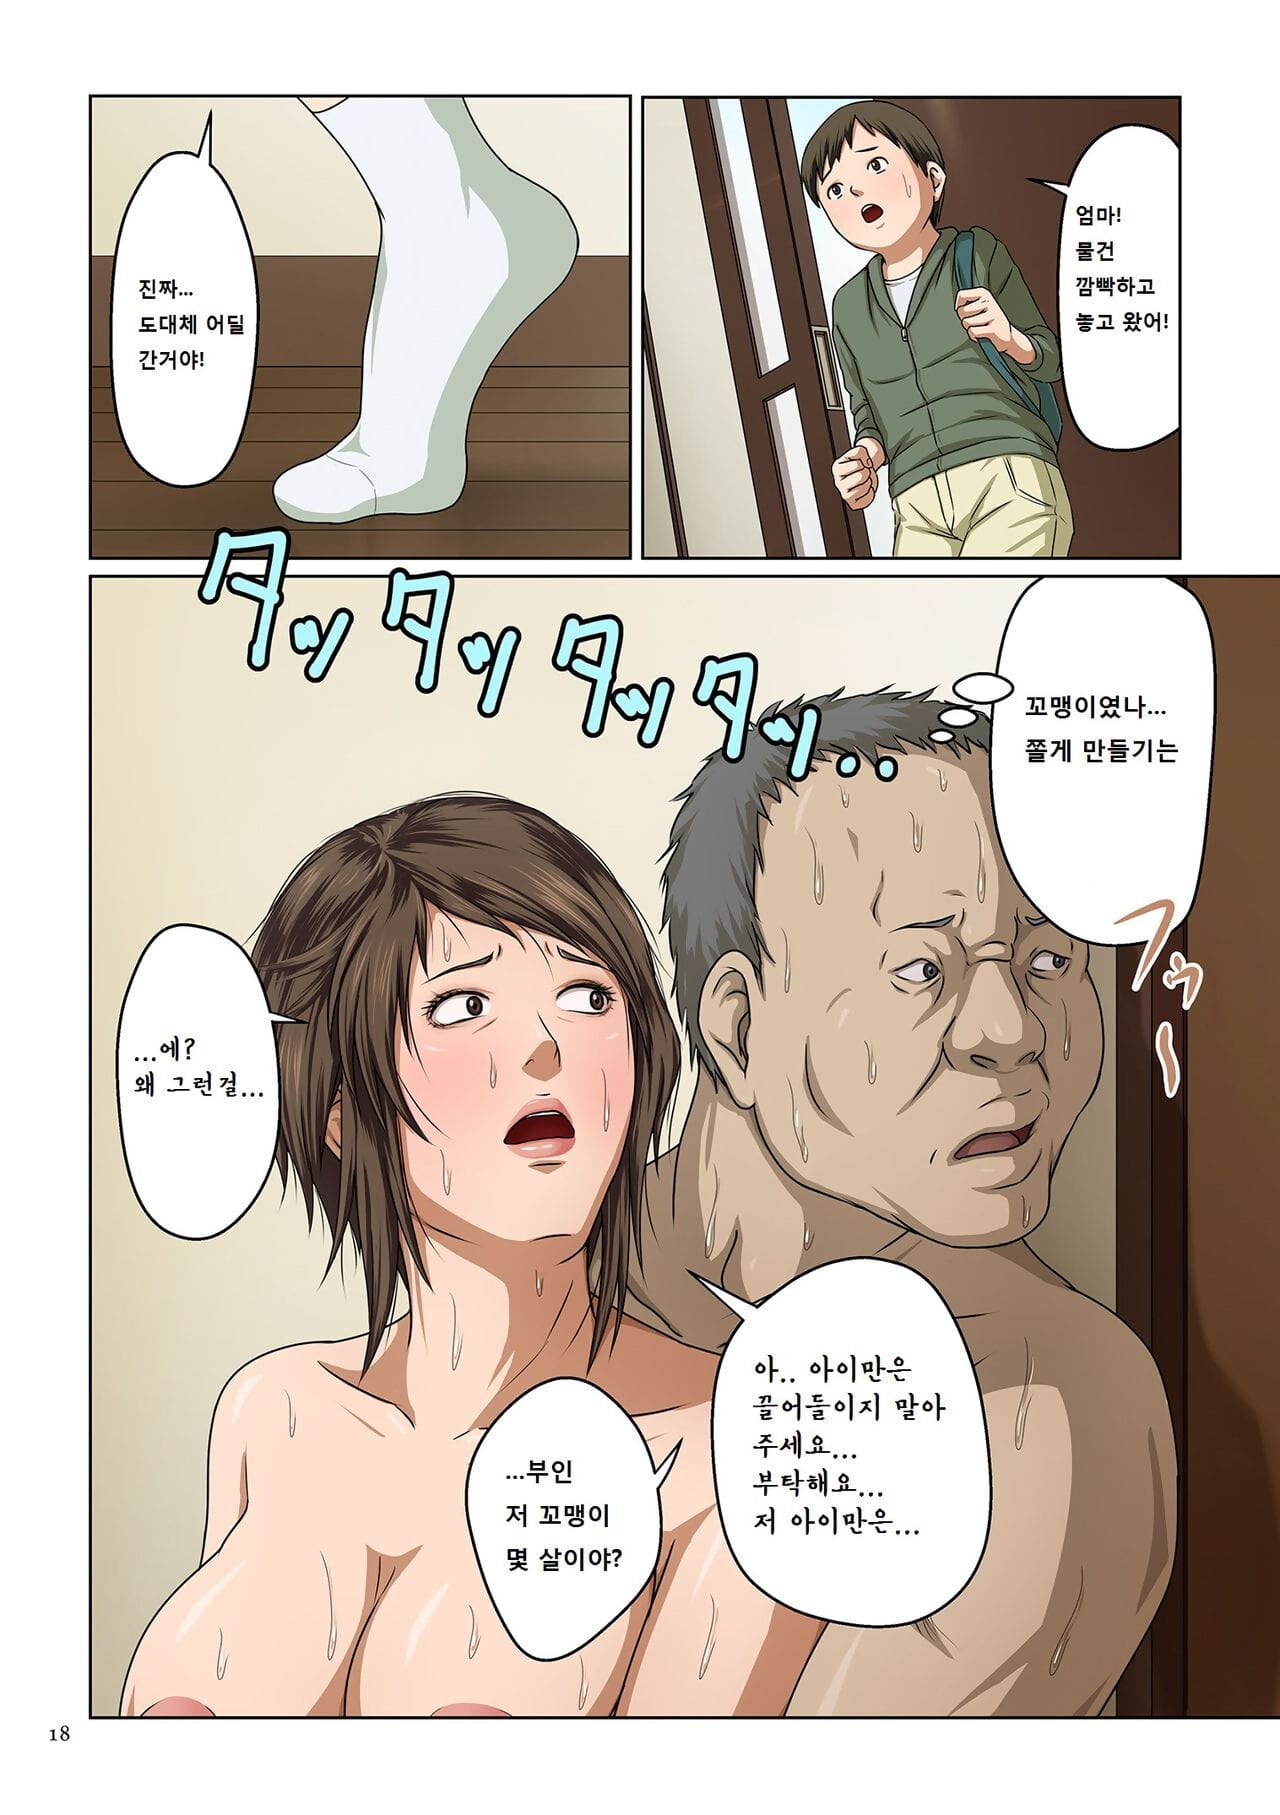 negurie karamitsuku shisen 휘감기는 시선 :Comic: kuriberon duma 2017 07 vol. 03 Koreanisch 저퀄빌런